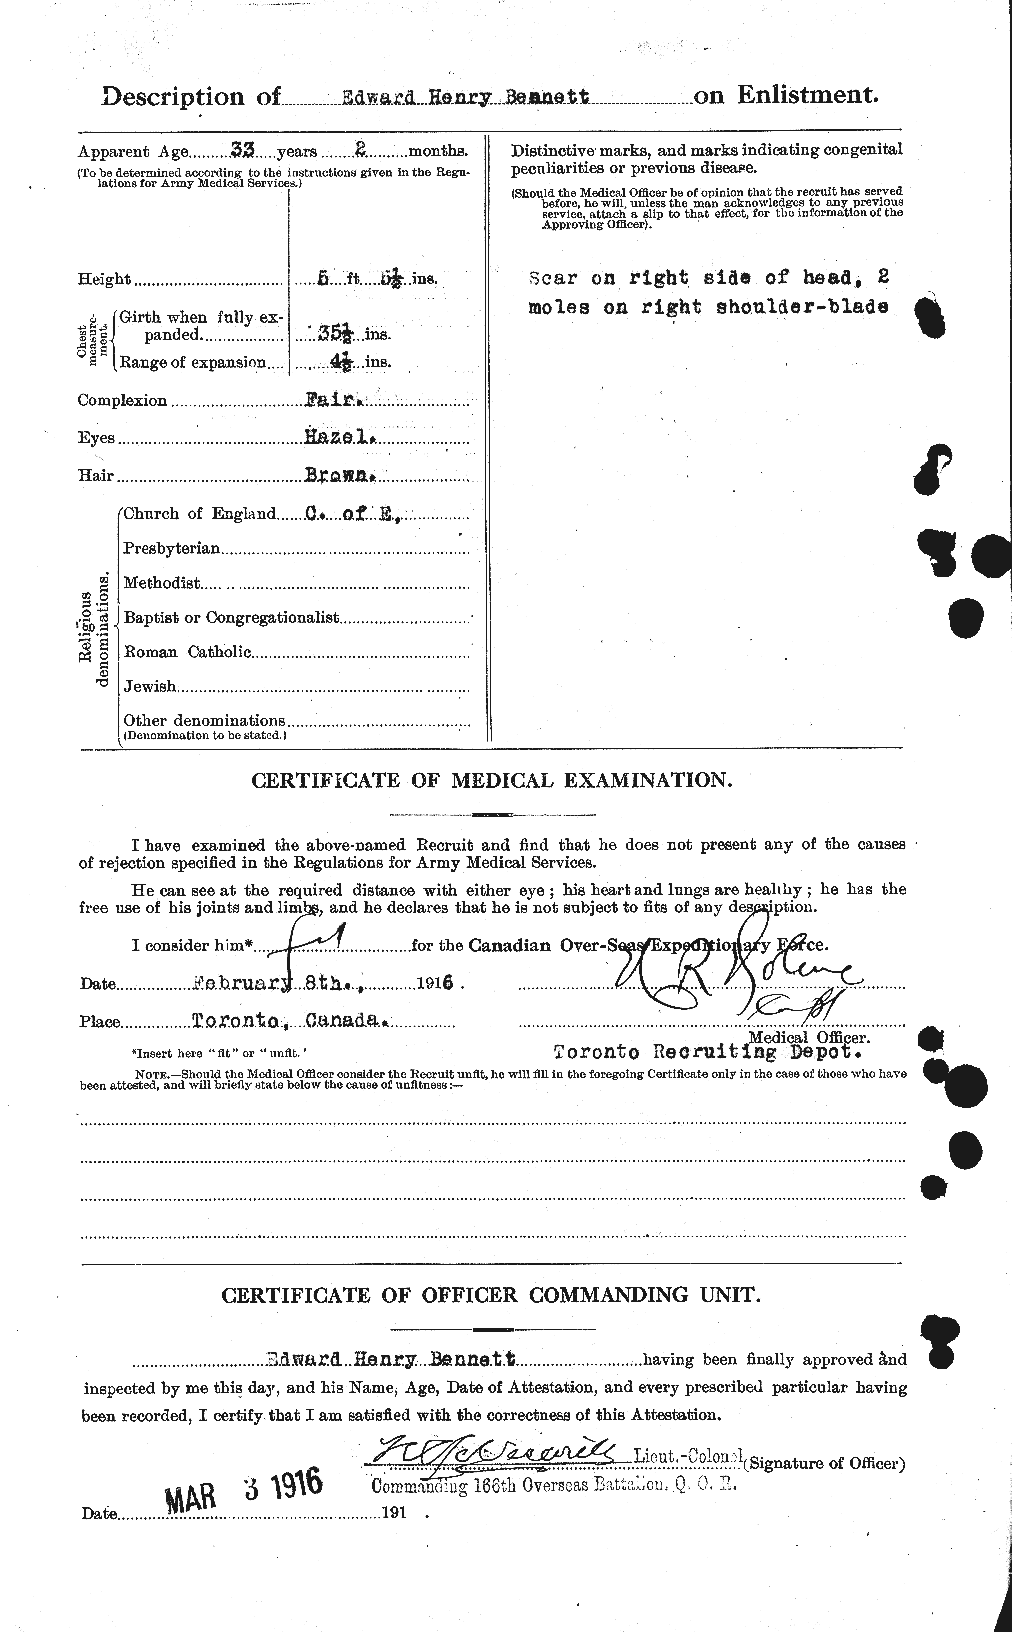 Dossiers du Personnel de la Première Guerre mondiale - CEC 233463b